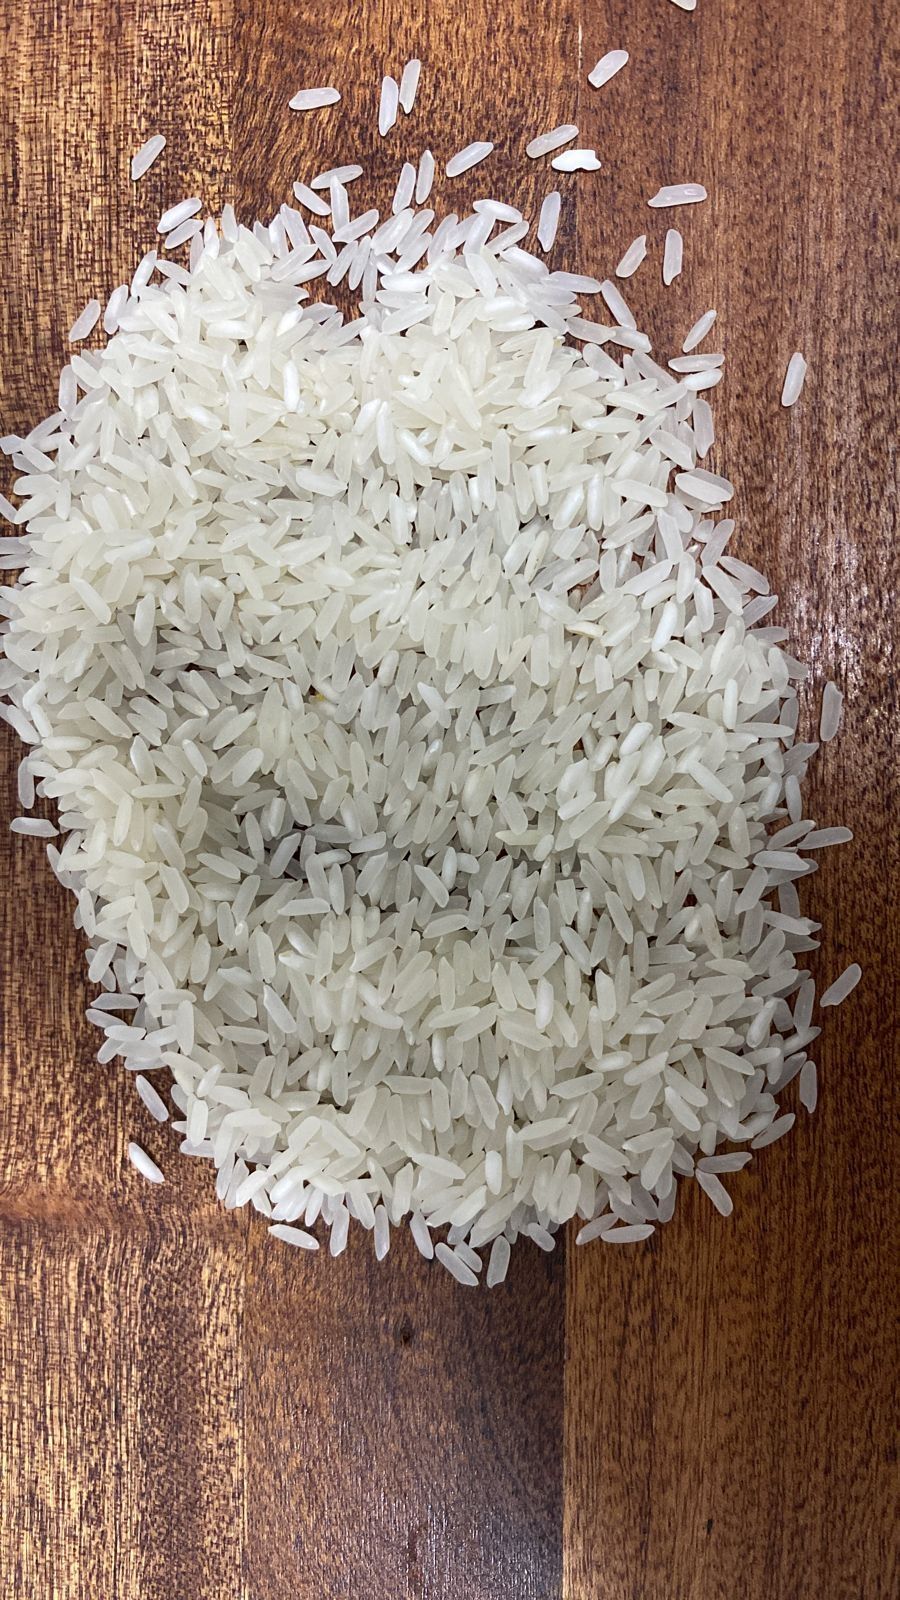 Рис качественный